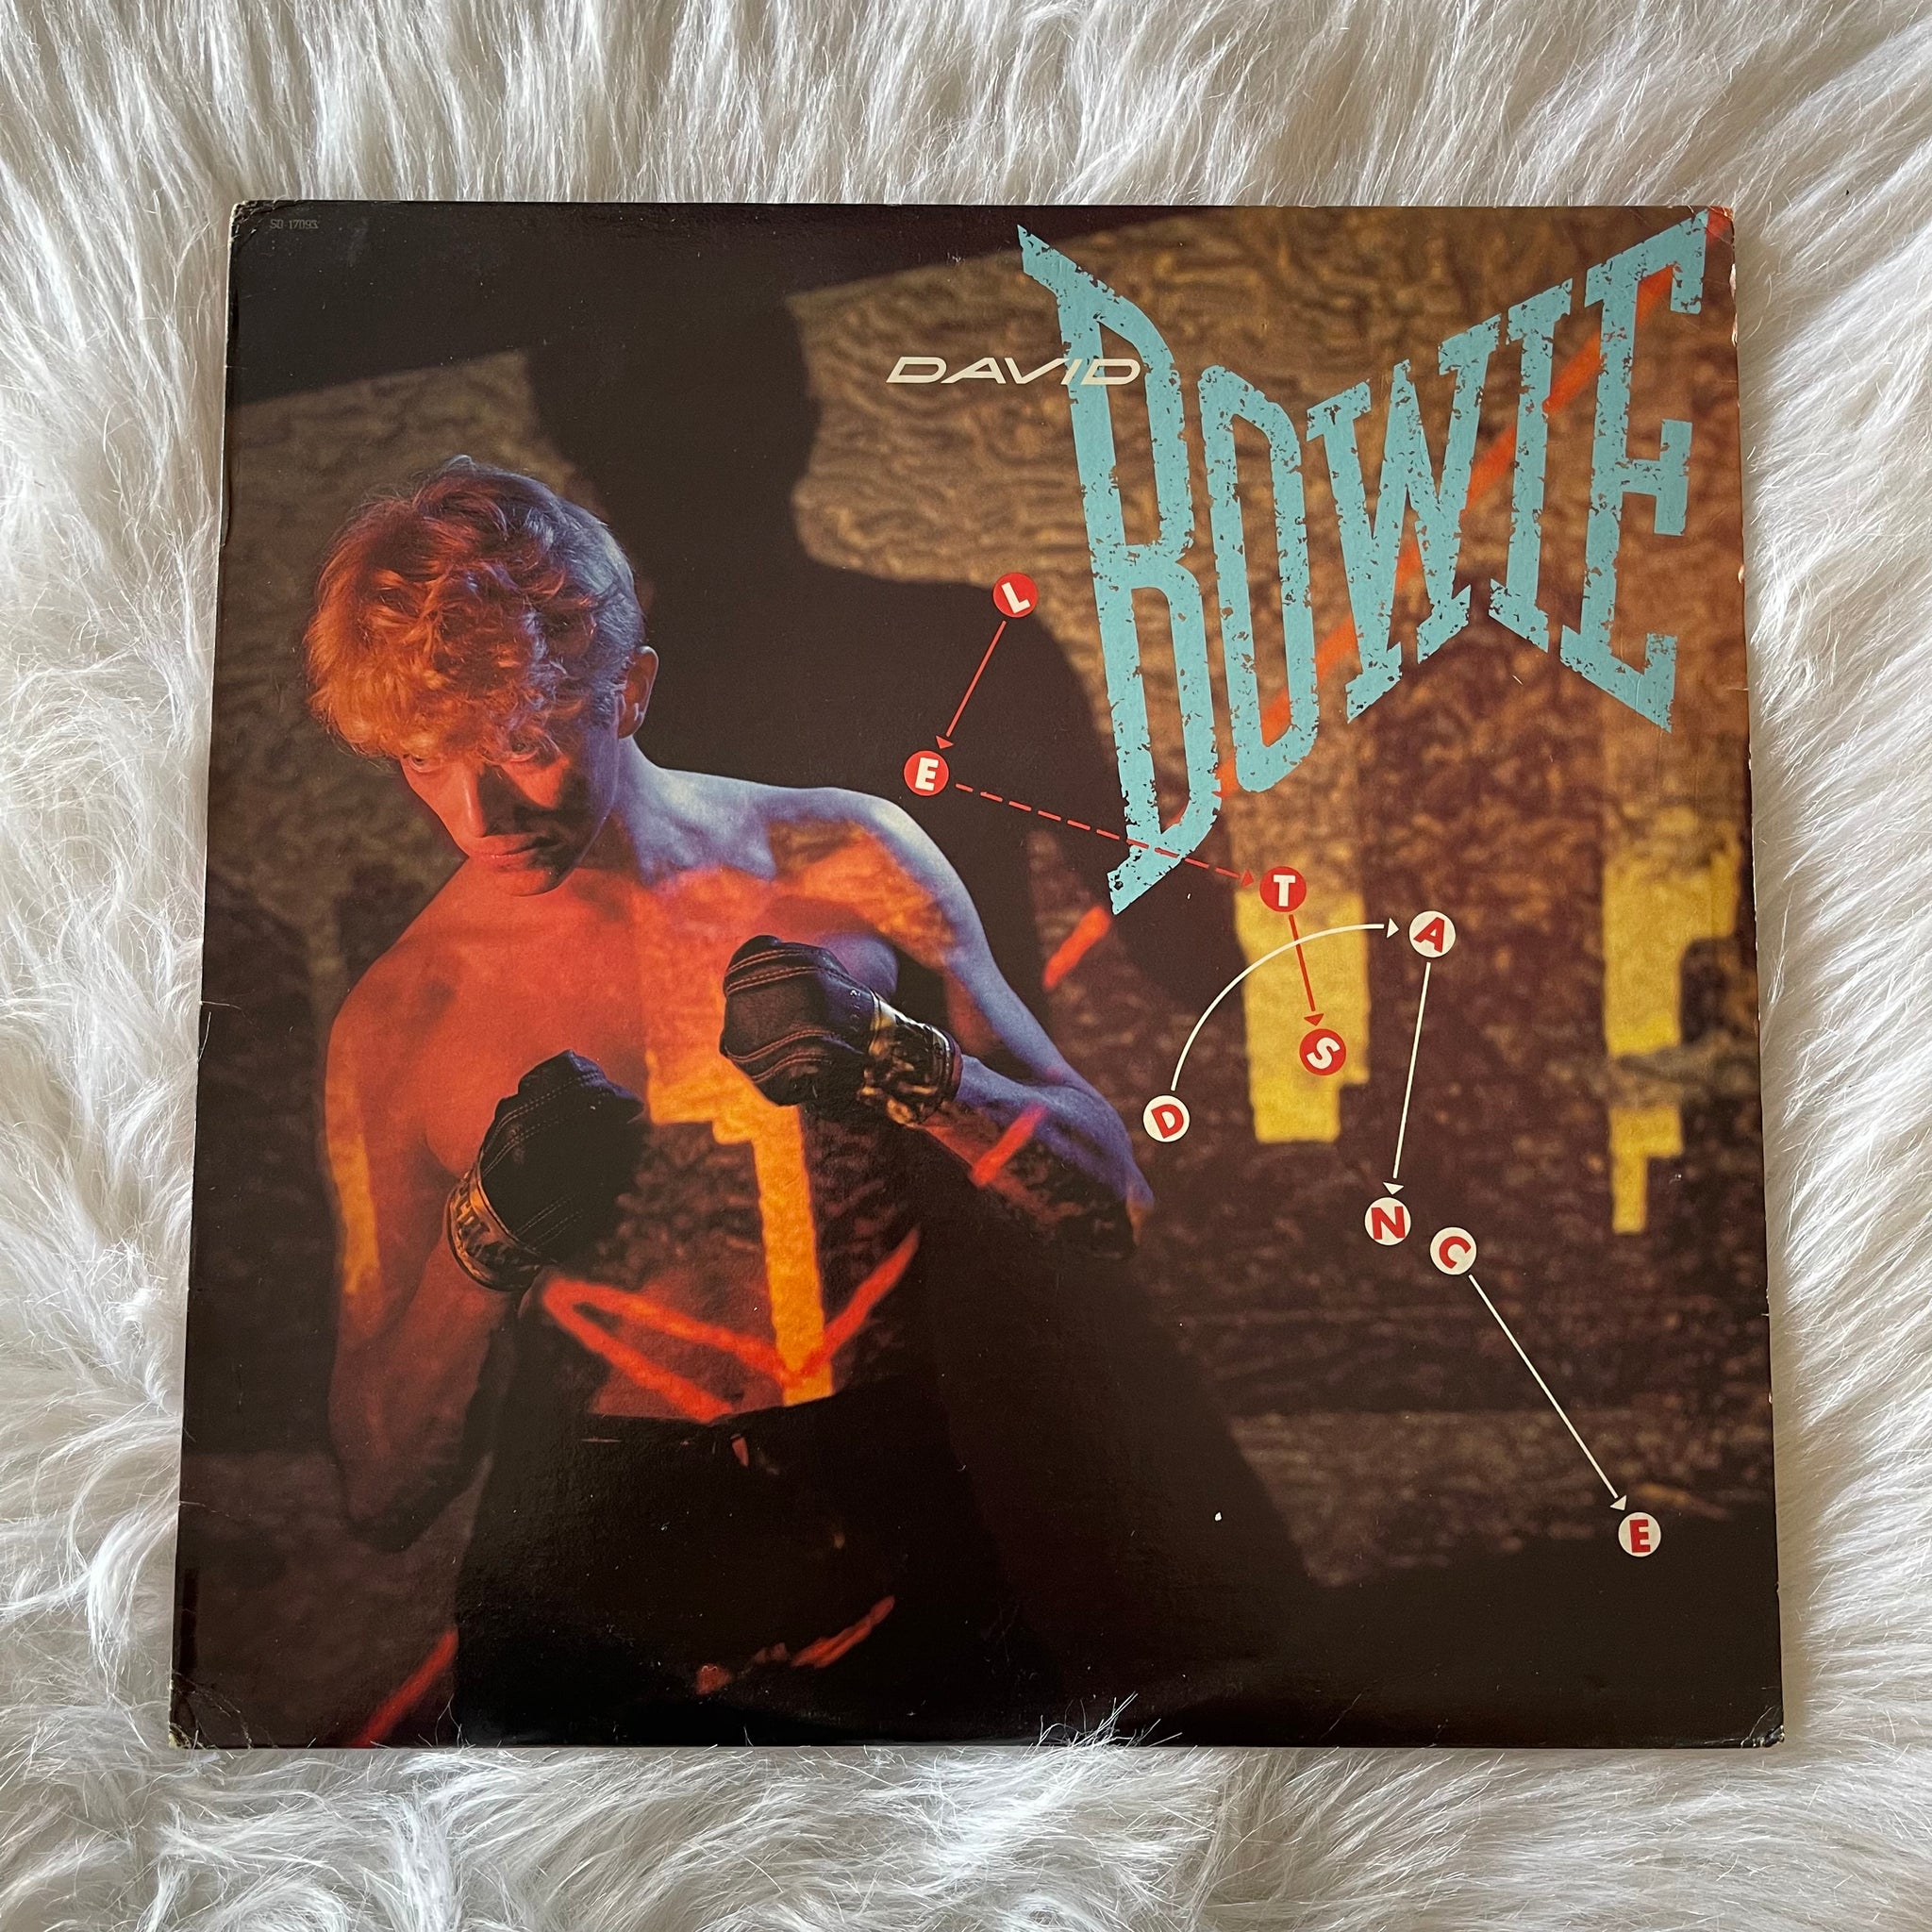 David Bowie-Let’s Dance